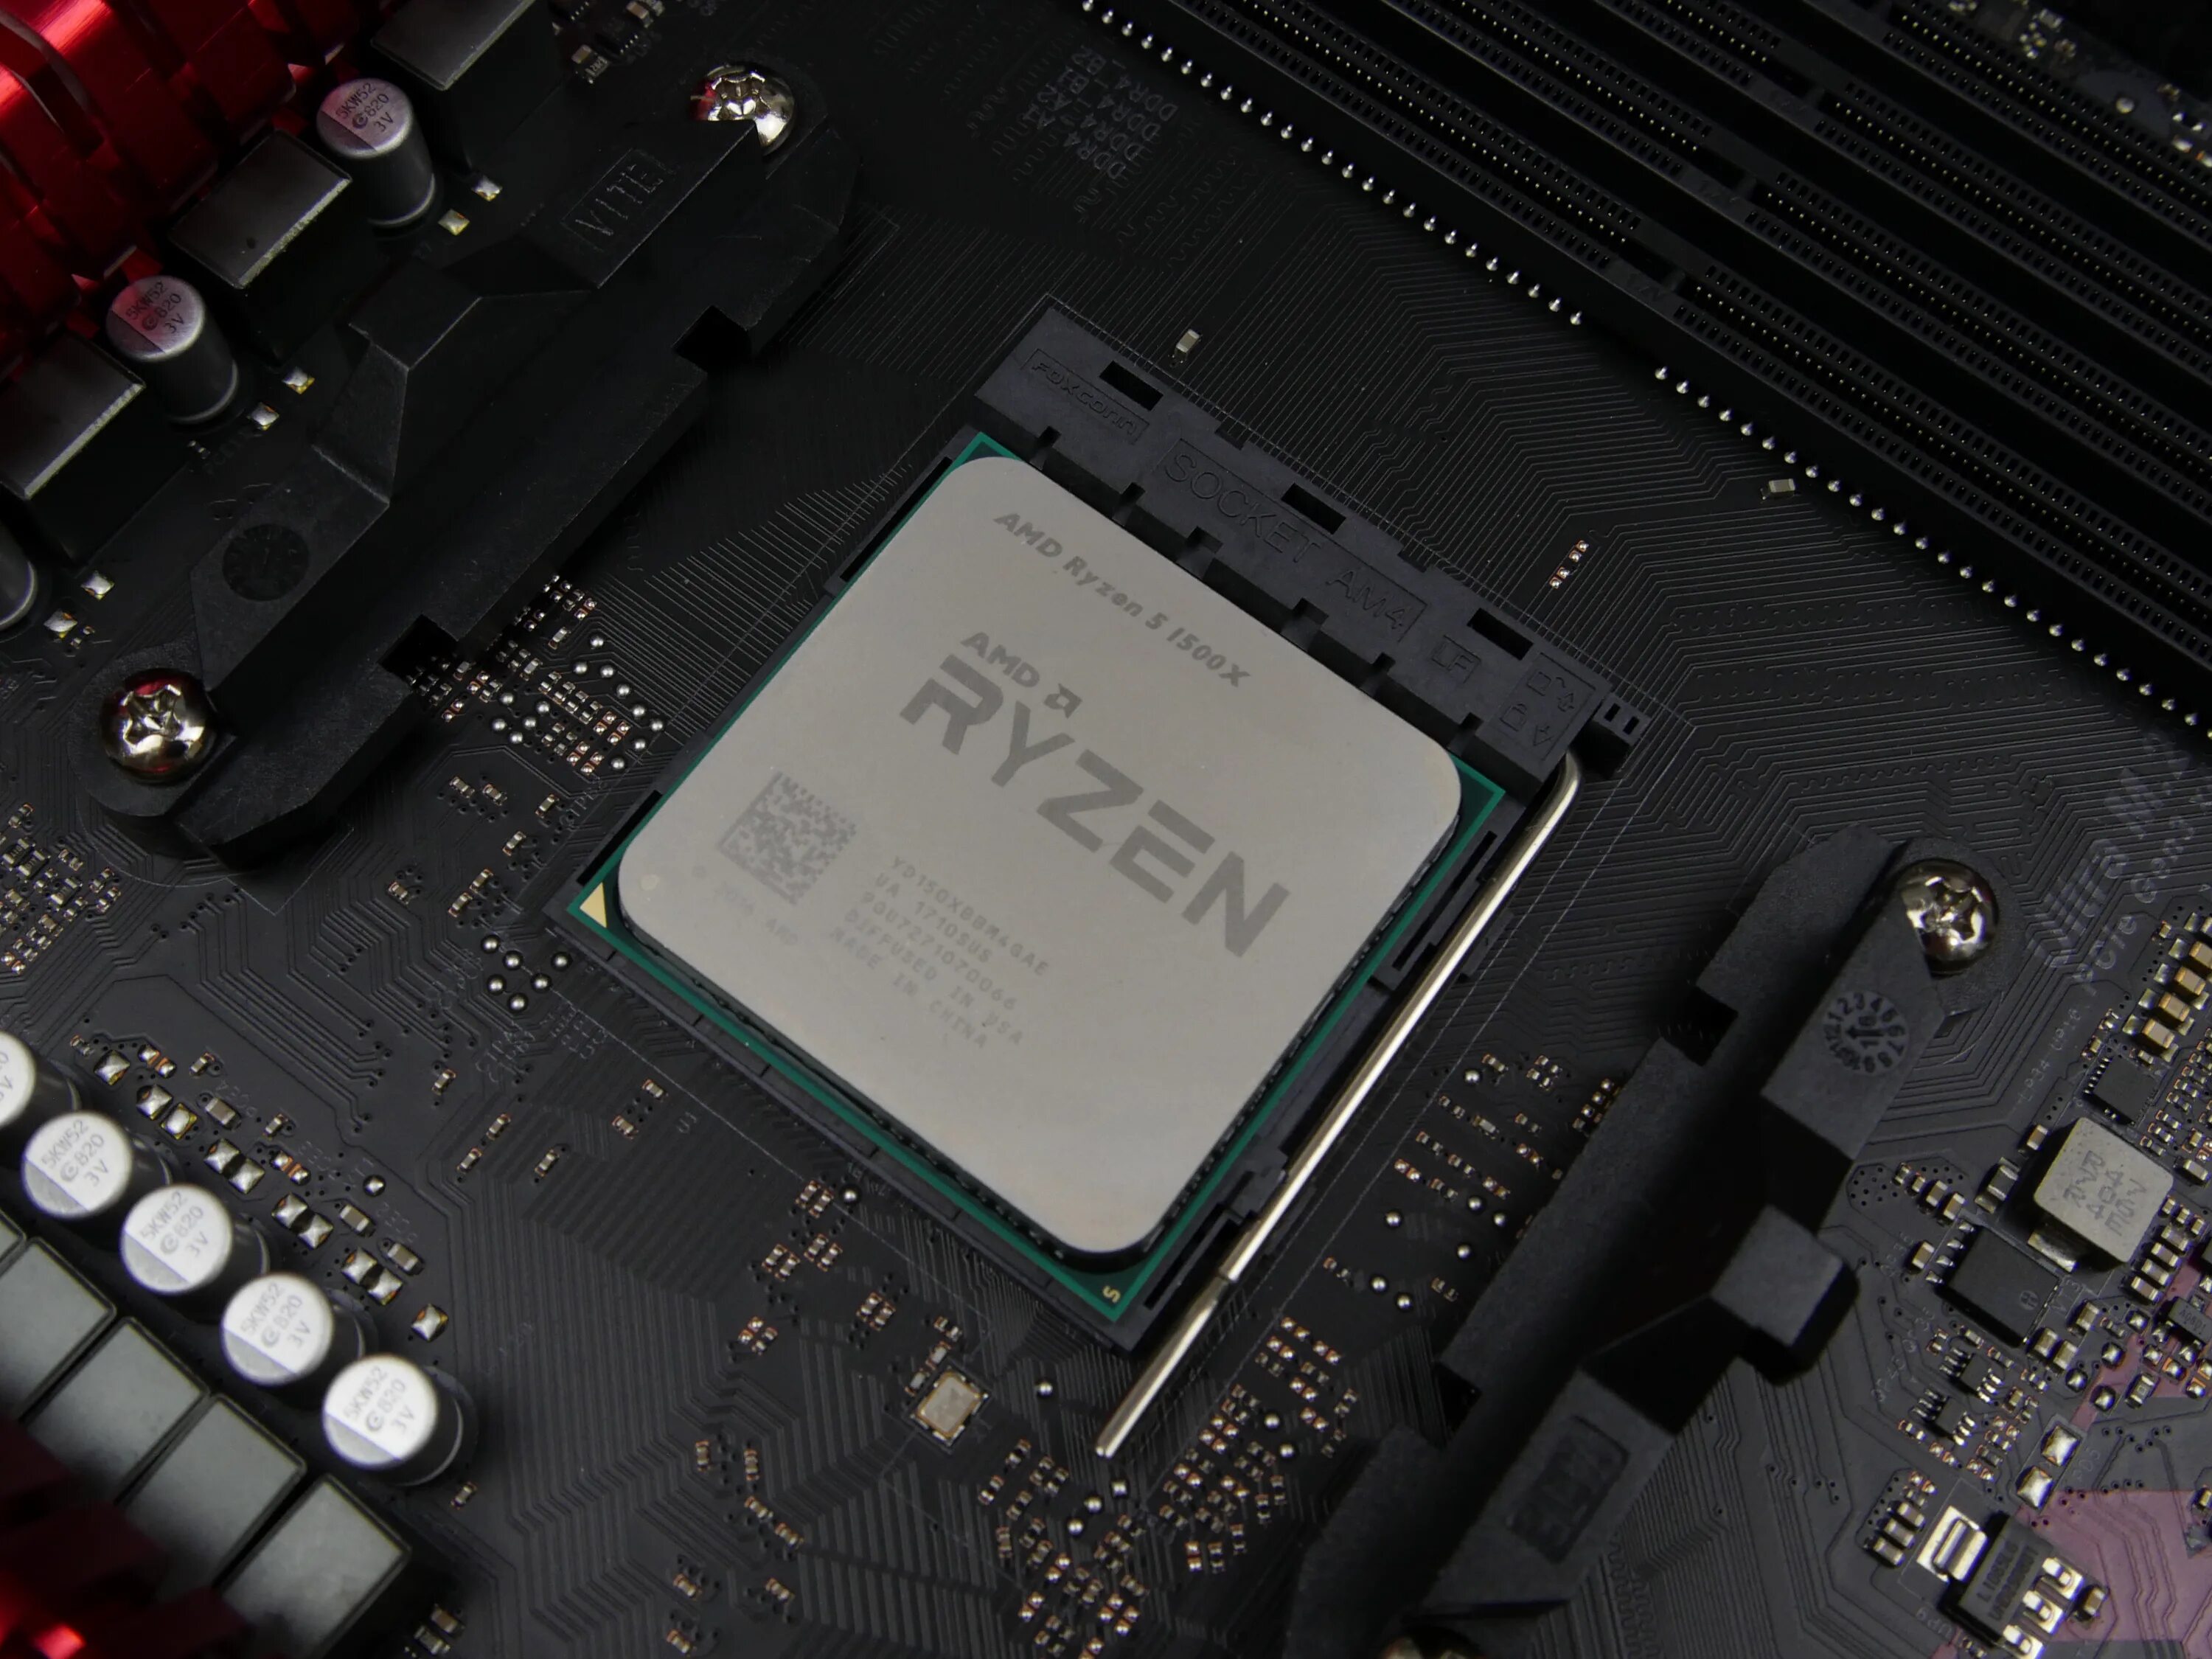 Amd ryzen 5 сайт. 1500х Ryzen. Ryzen 5 1500. AMD Ryzen 5 1500x Quad-Core Processor 3.50 GHZ. Процессор AMD Ryzen 5 1500x (yd150xbbaebox).